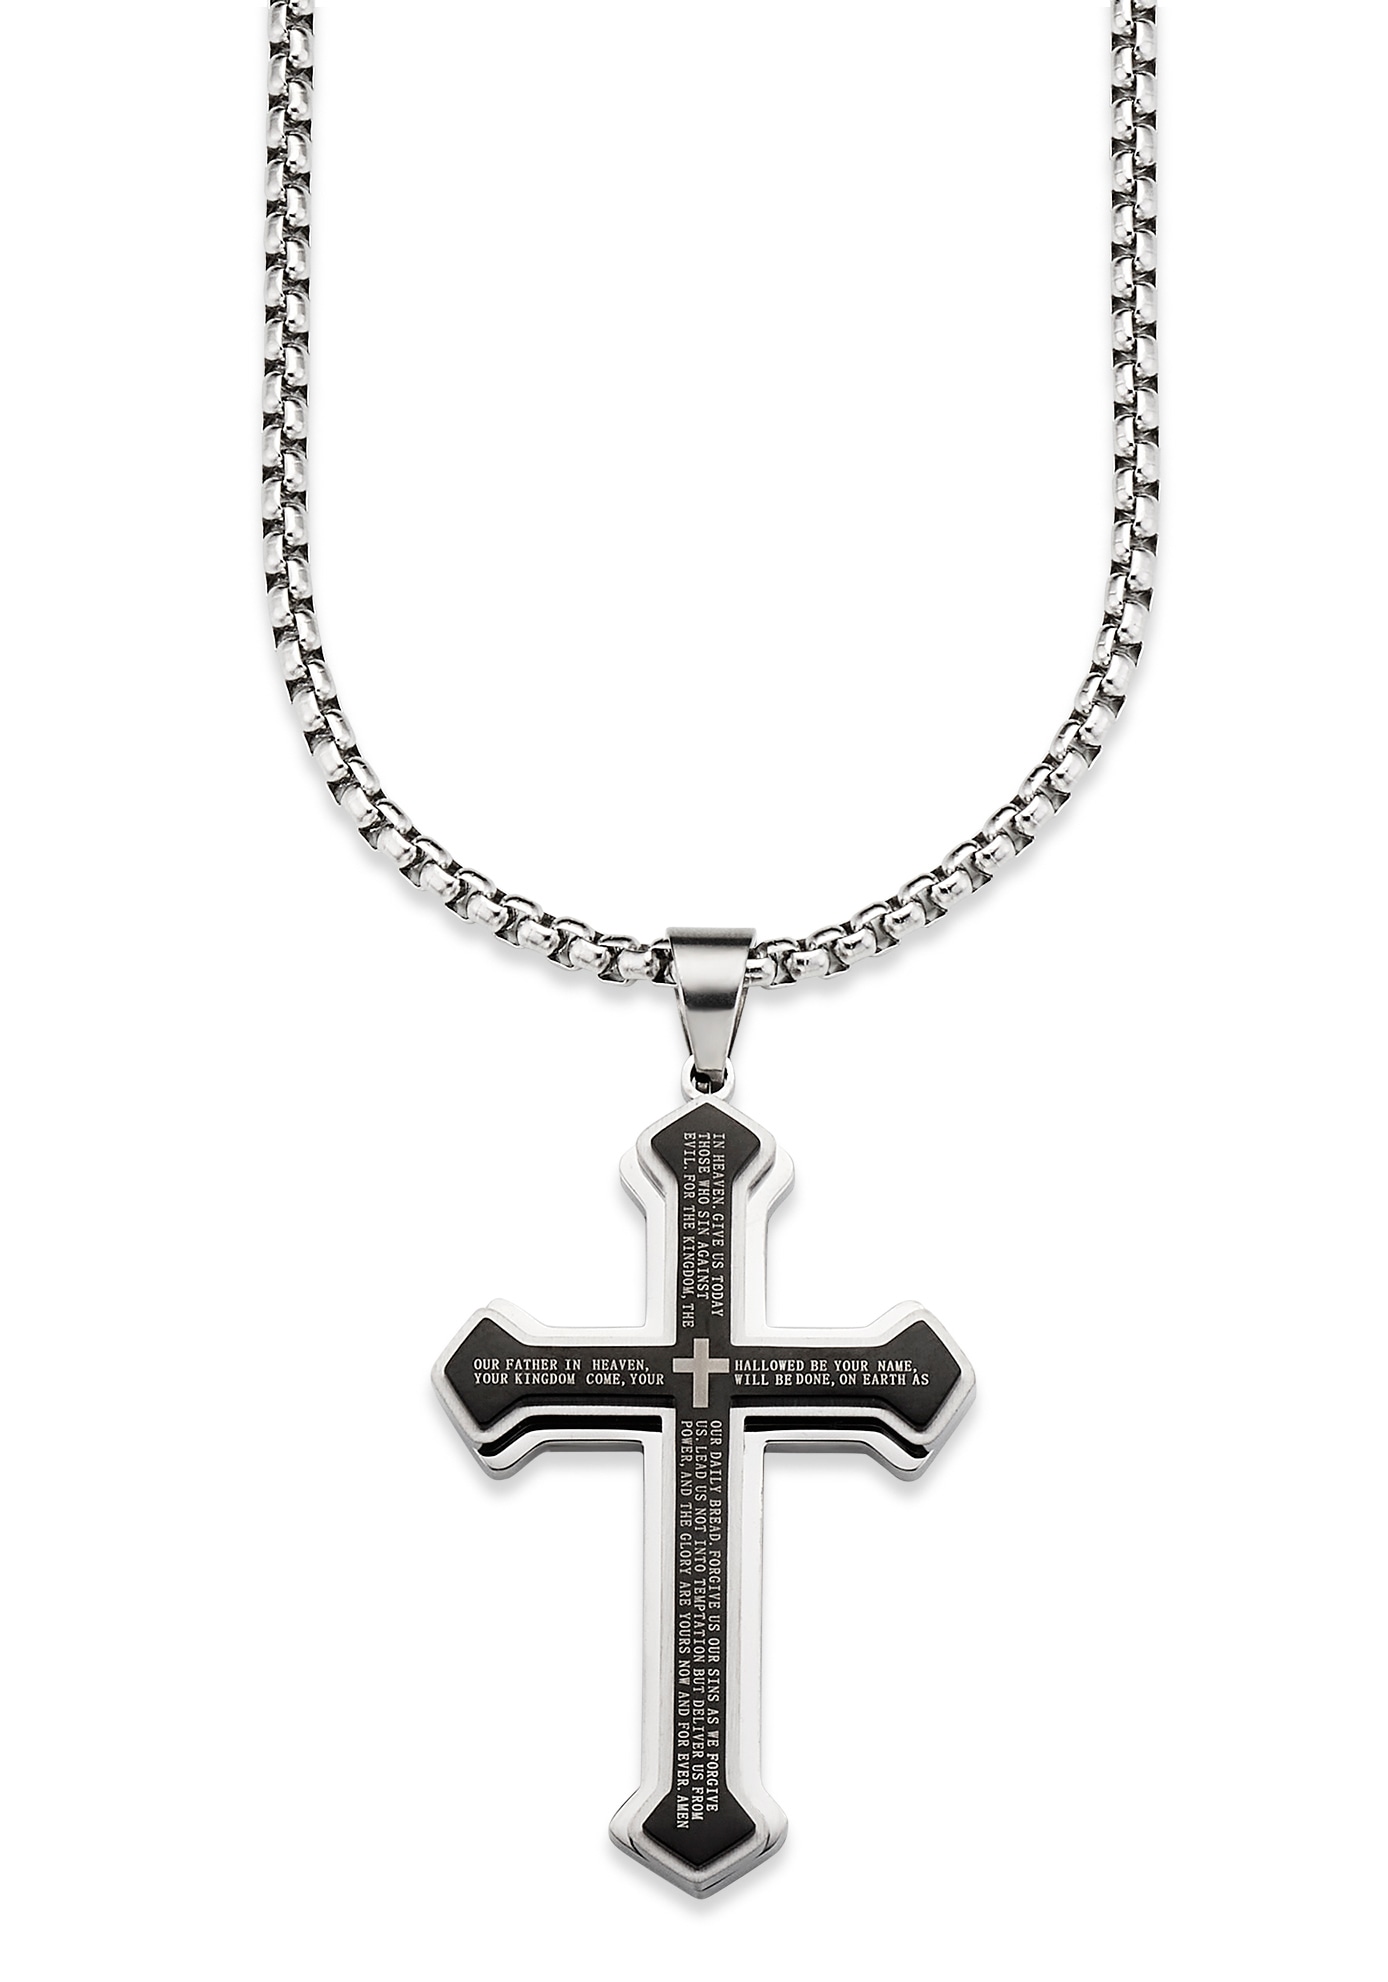 Kette mit Anhänger »Schmuck Geschenk, Halskette Kreuz Venezianerkette Silberfarben...